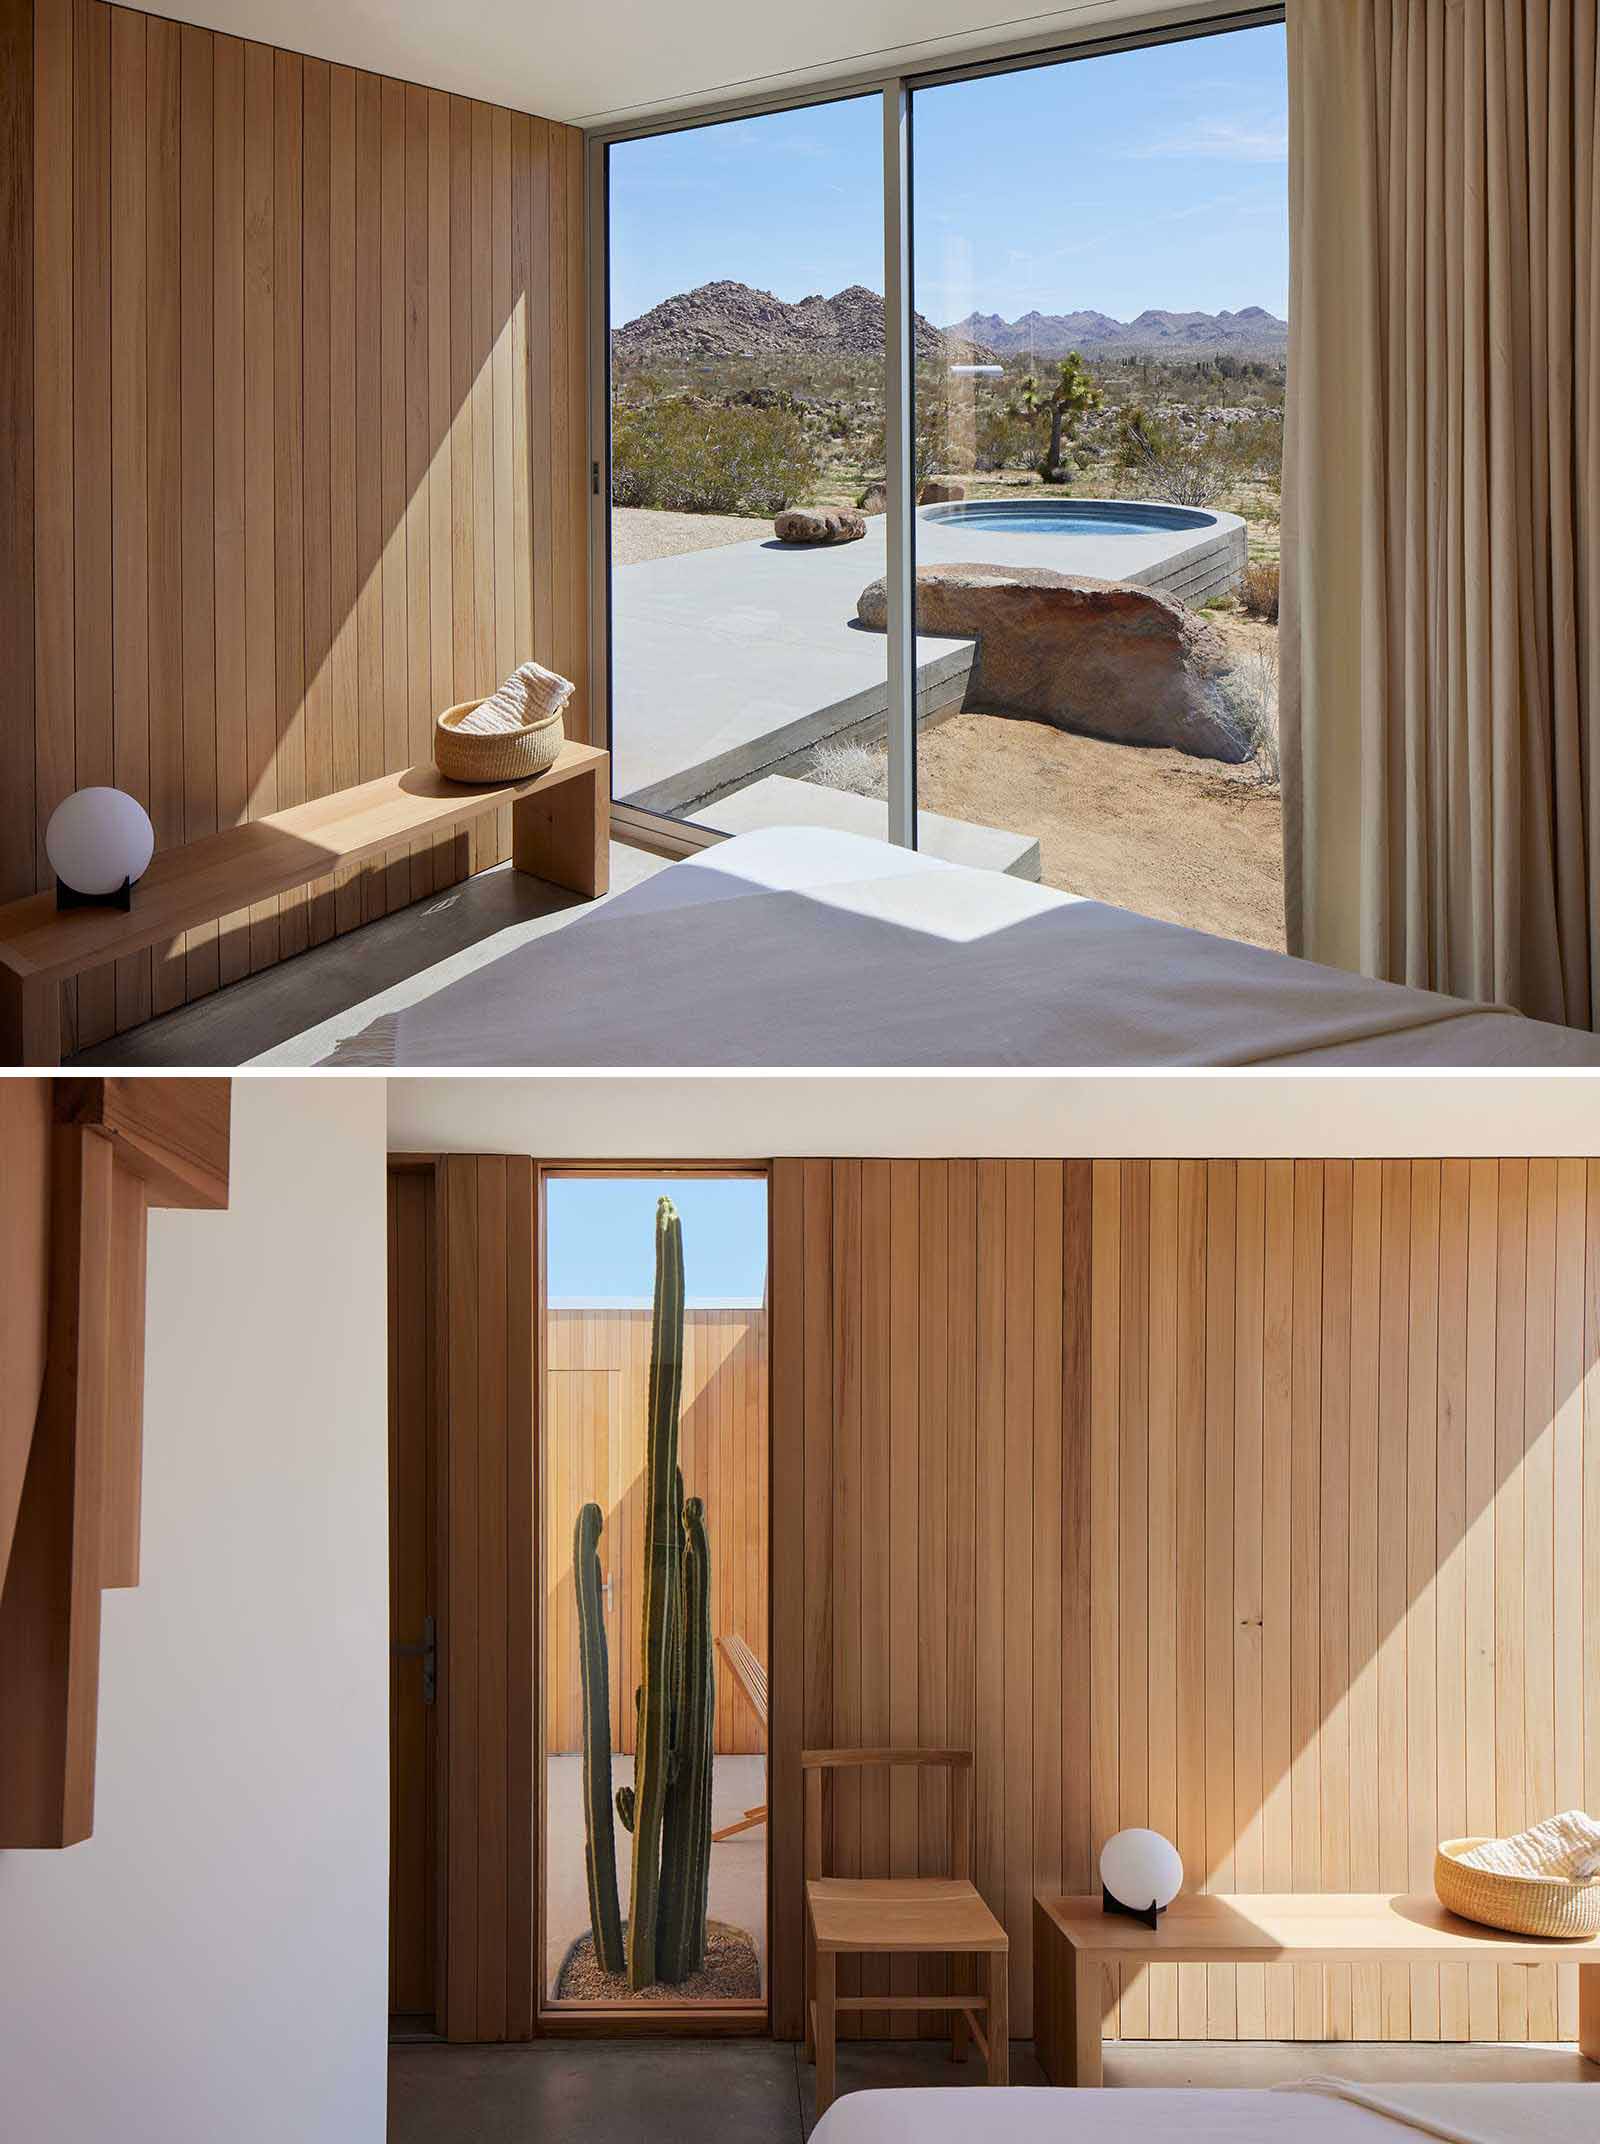 Acest dormitor modern include lambriuri de cedru care acoperă pereții.